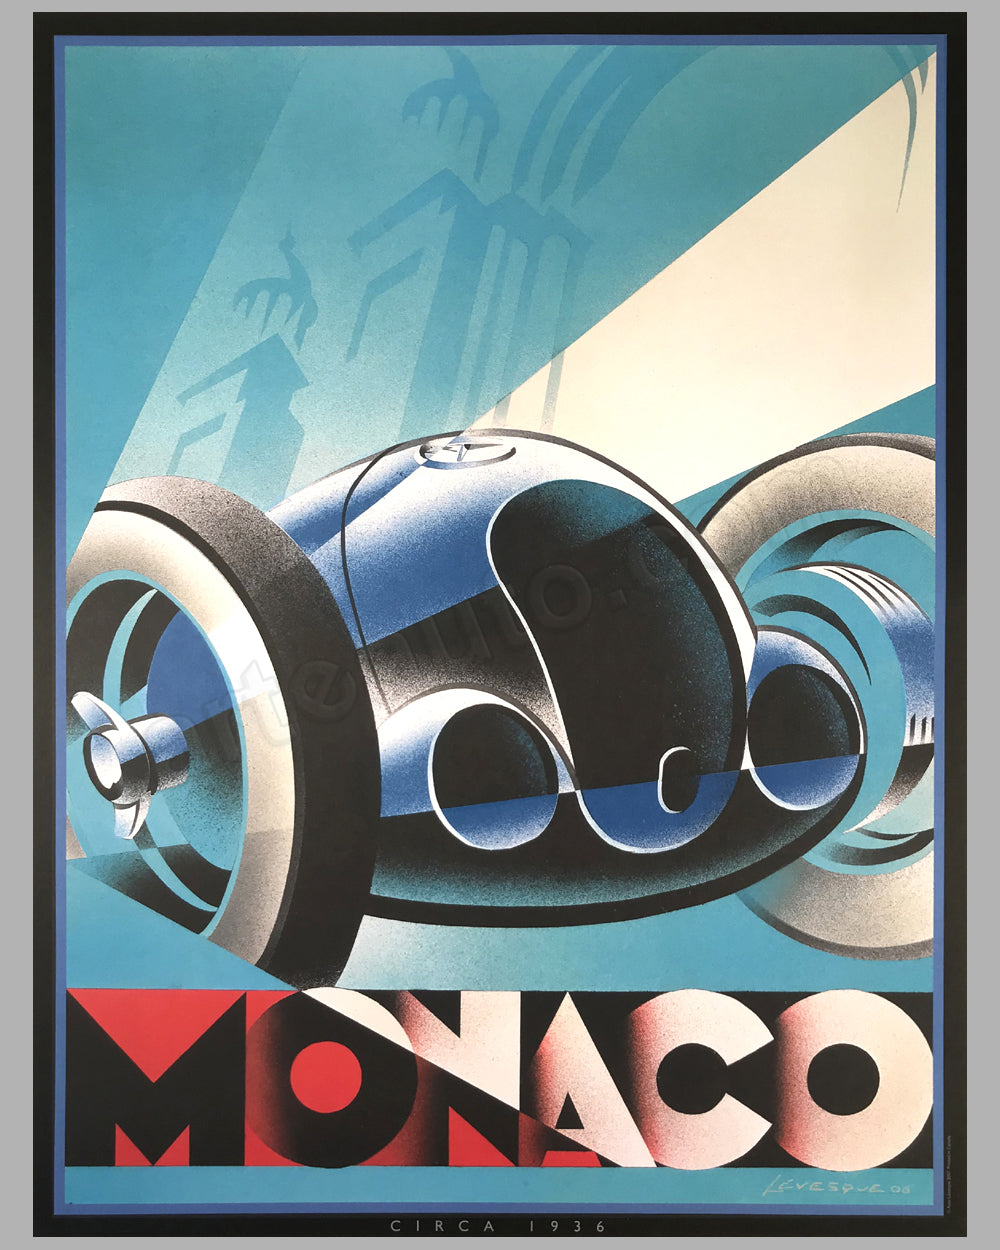 Monaco commemorative poster by Alain Lévesque